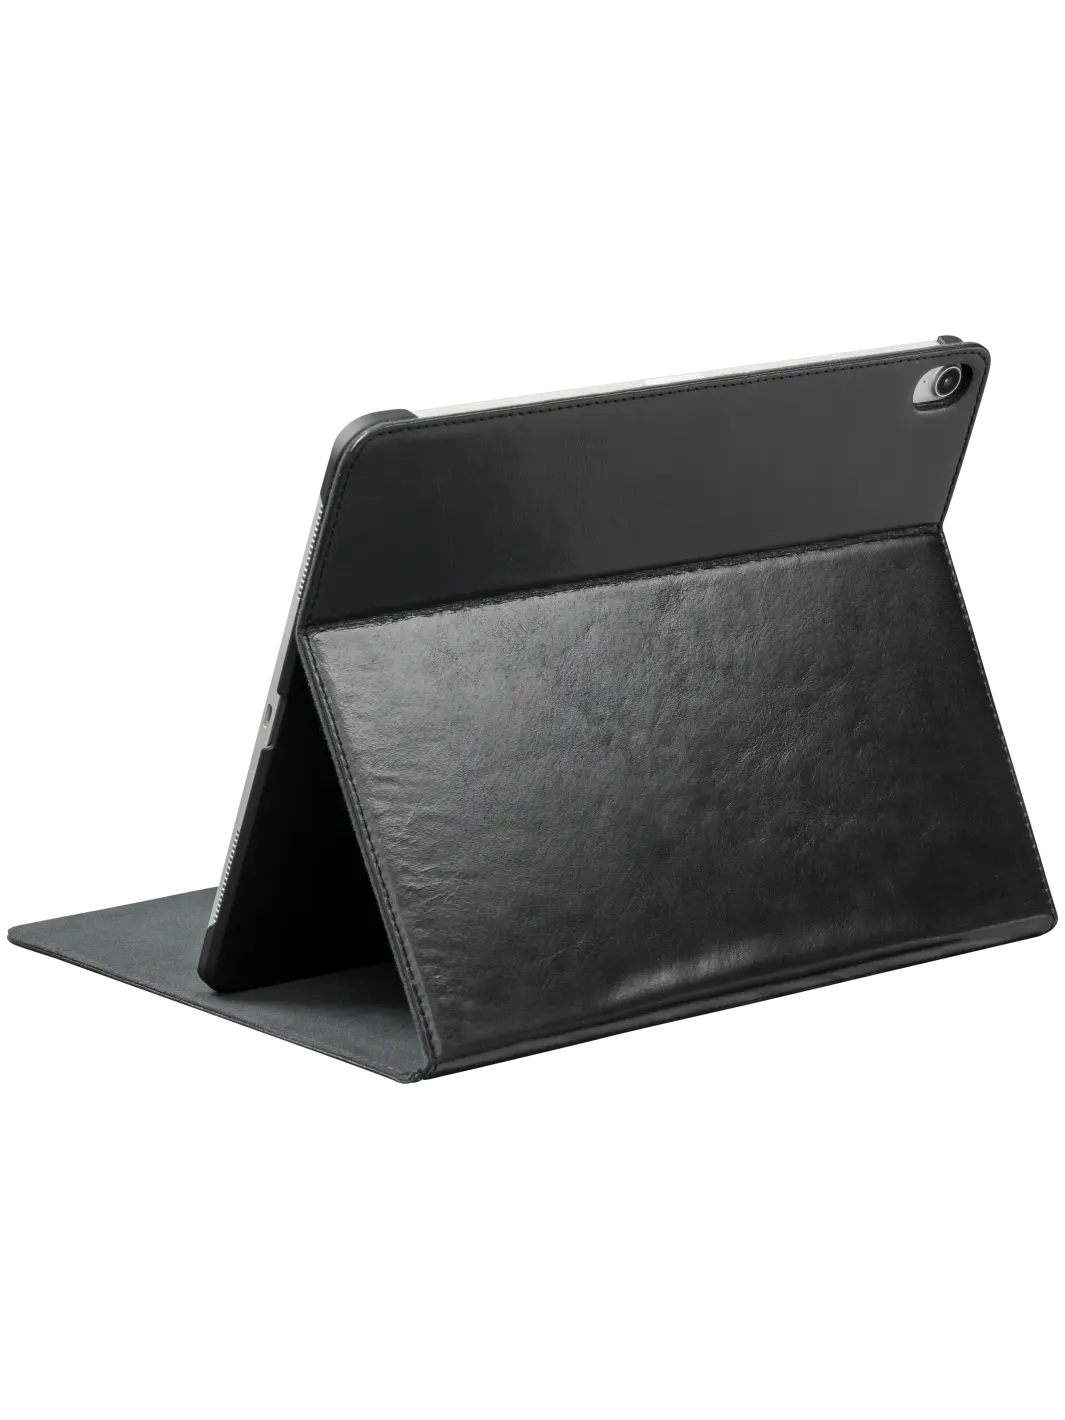 Copenhagen tablet cases Black iPad Pro 12.9" (3rd Gen) iPad Cases